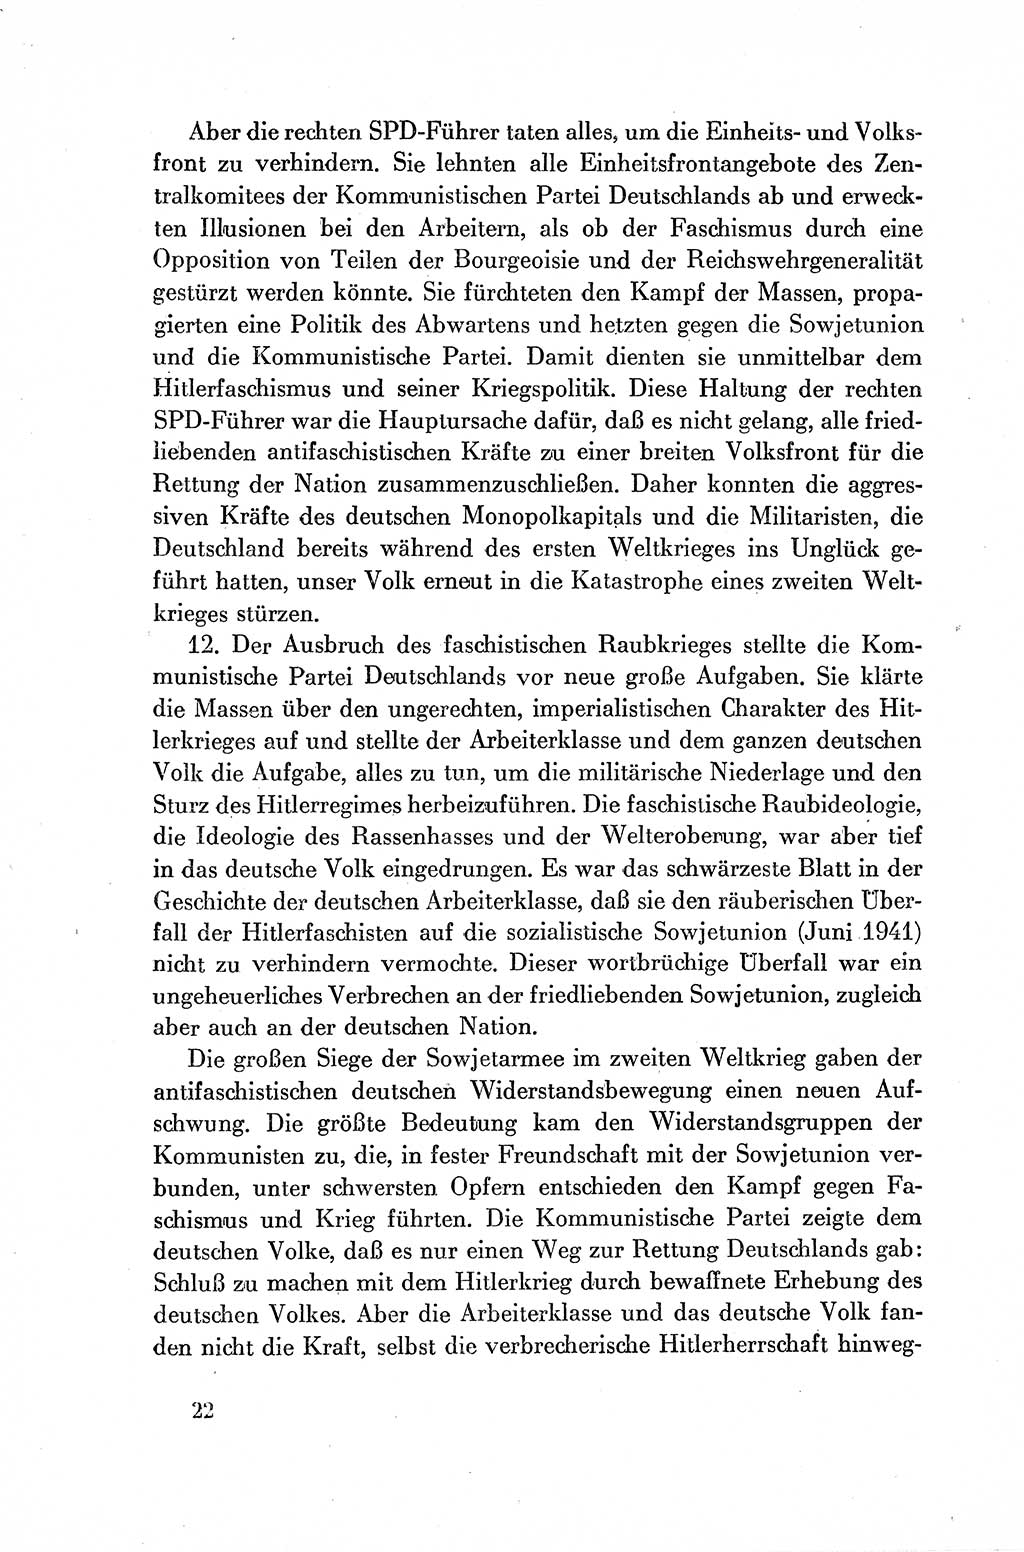 Dokumente der Sozialistischen Einheitspartei Deutschlands (SED) [Deutsche Demokratische Republik (DDR)] 1954-1955, Seite 22 (Dok. SED DDR 1954-1955, S. 22)